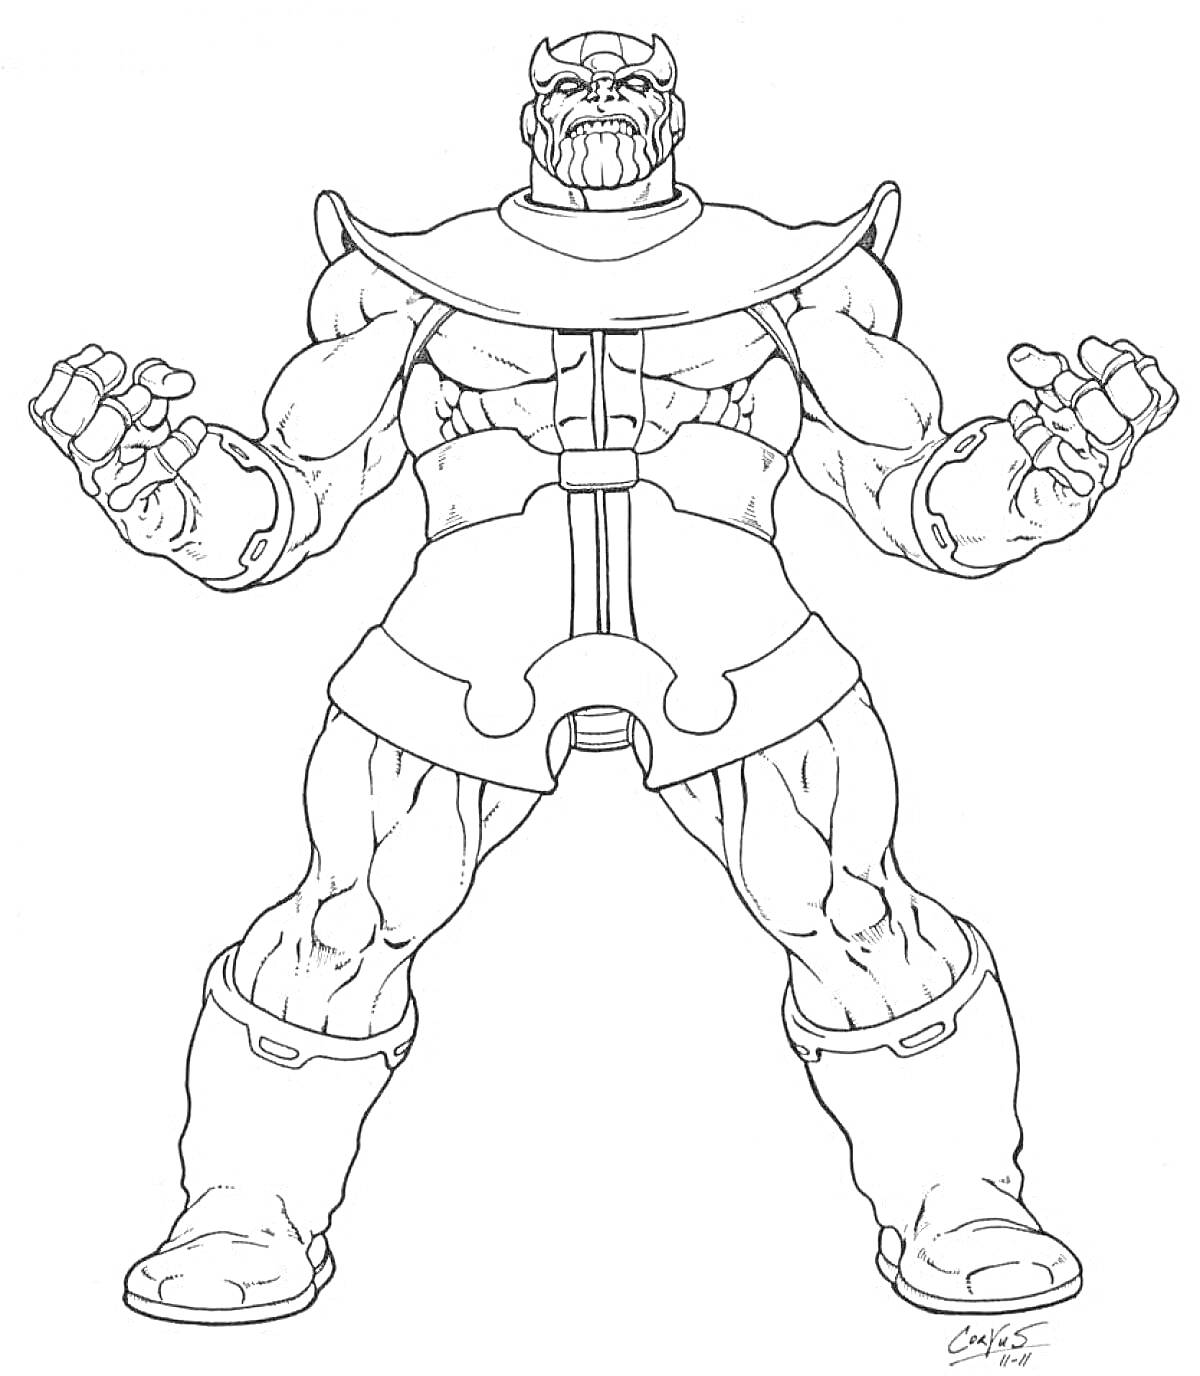 Танос с поднятыми руками в боевой стойке